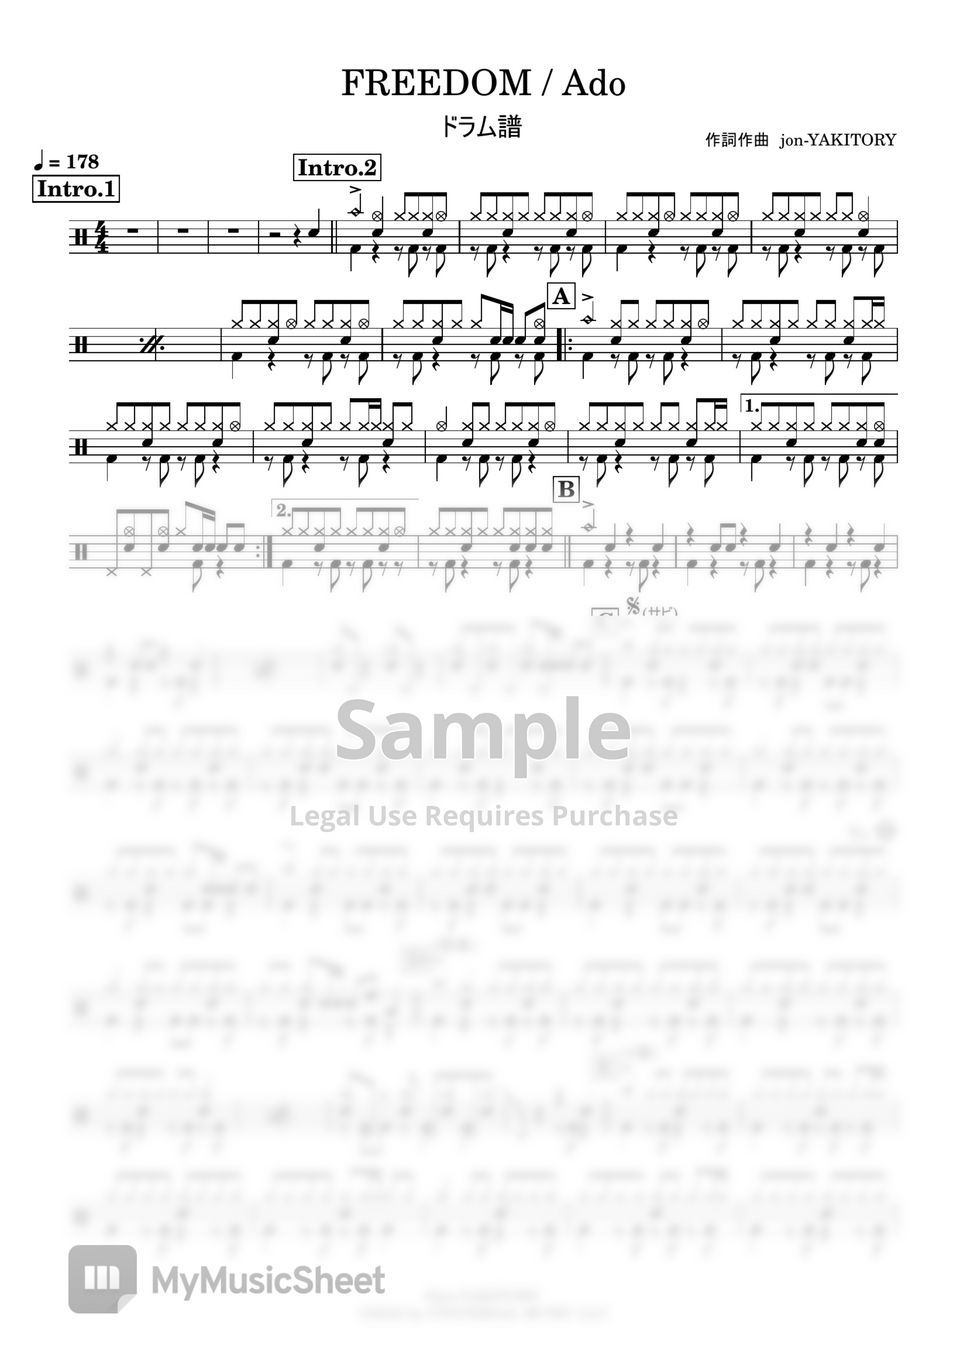 Ado - FREEDOM (Drums Score + MIDI) by Kensaku Suzuki